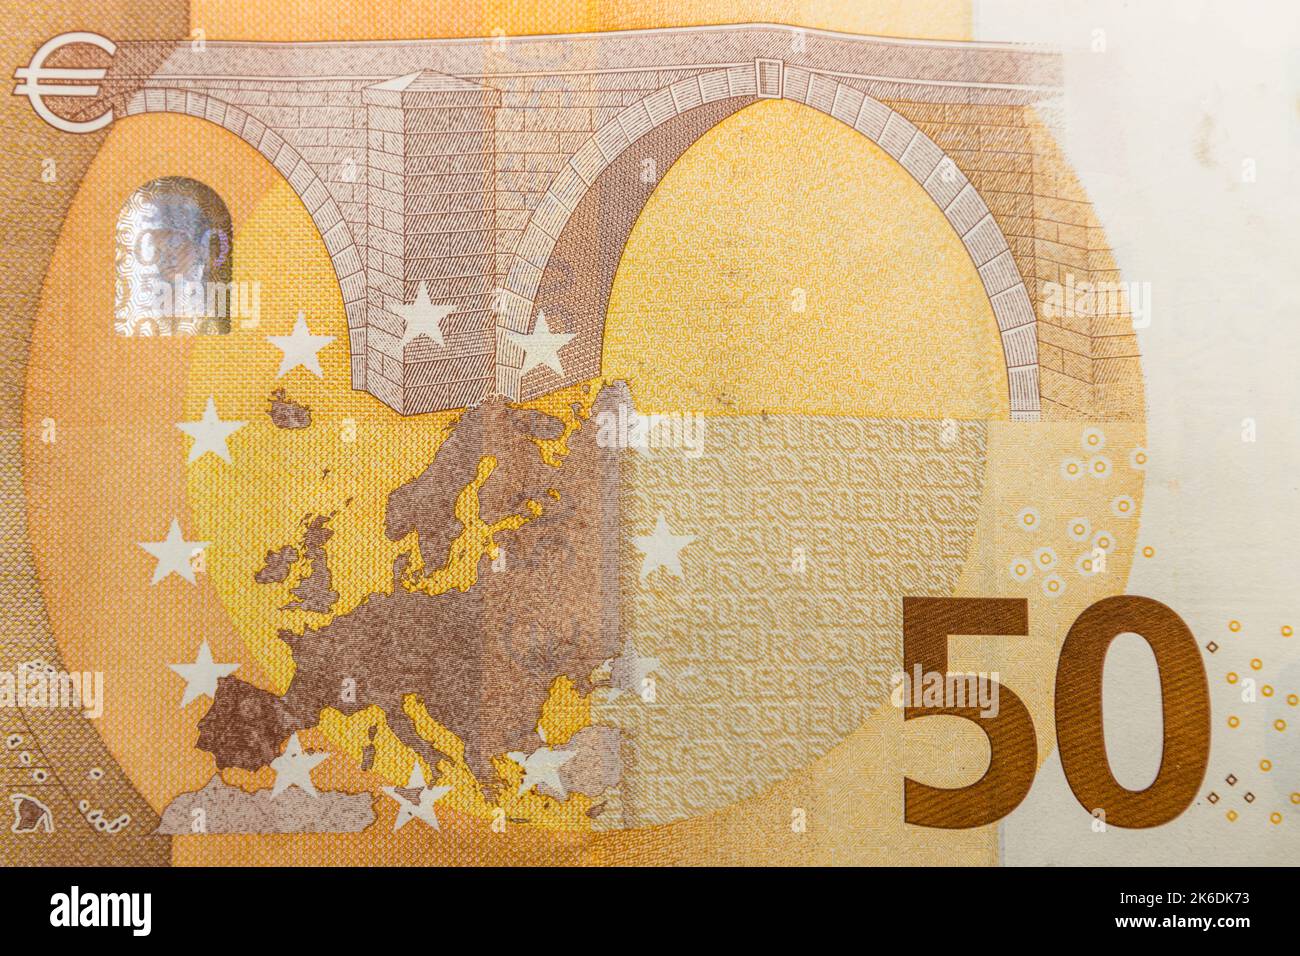 Europa-Karte auf einer 50-Euro-Banknote. Konzept der Vereinigung europäischer Länder Stockfoto